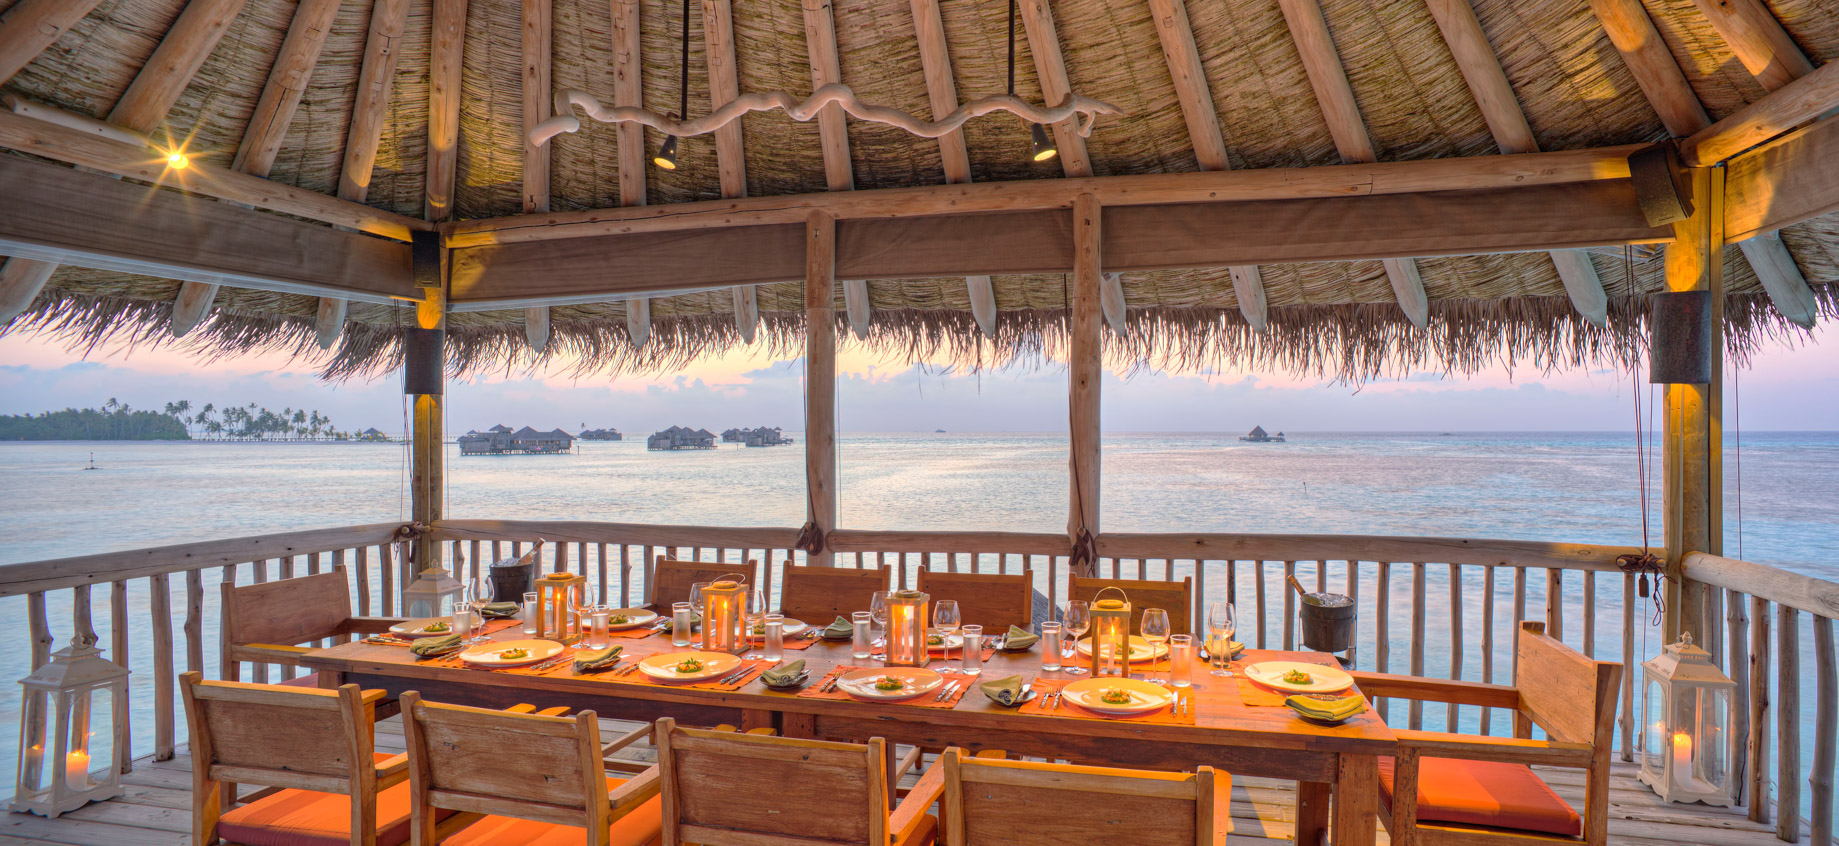 Gili Lankanfushi Resort – North Male Atoll, Maldives – The Private Reserve Second Level Dining Area